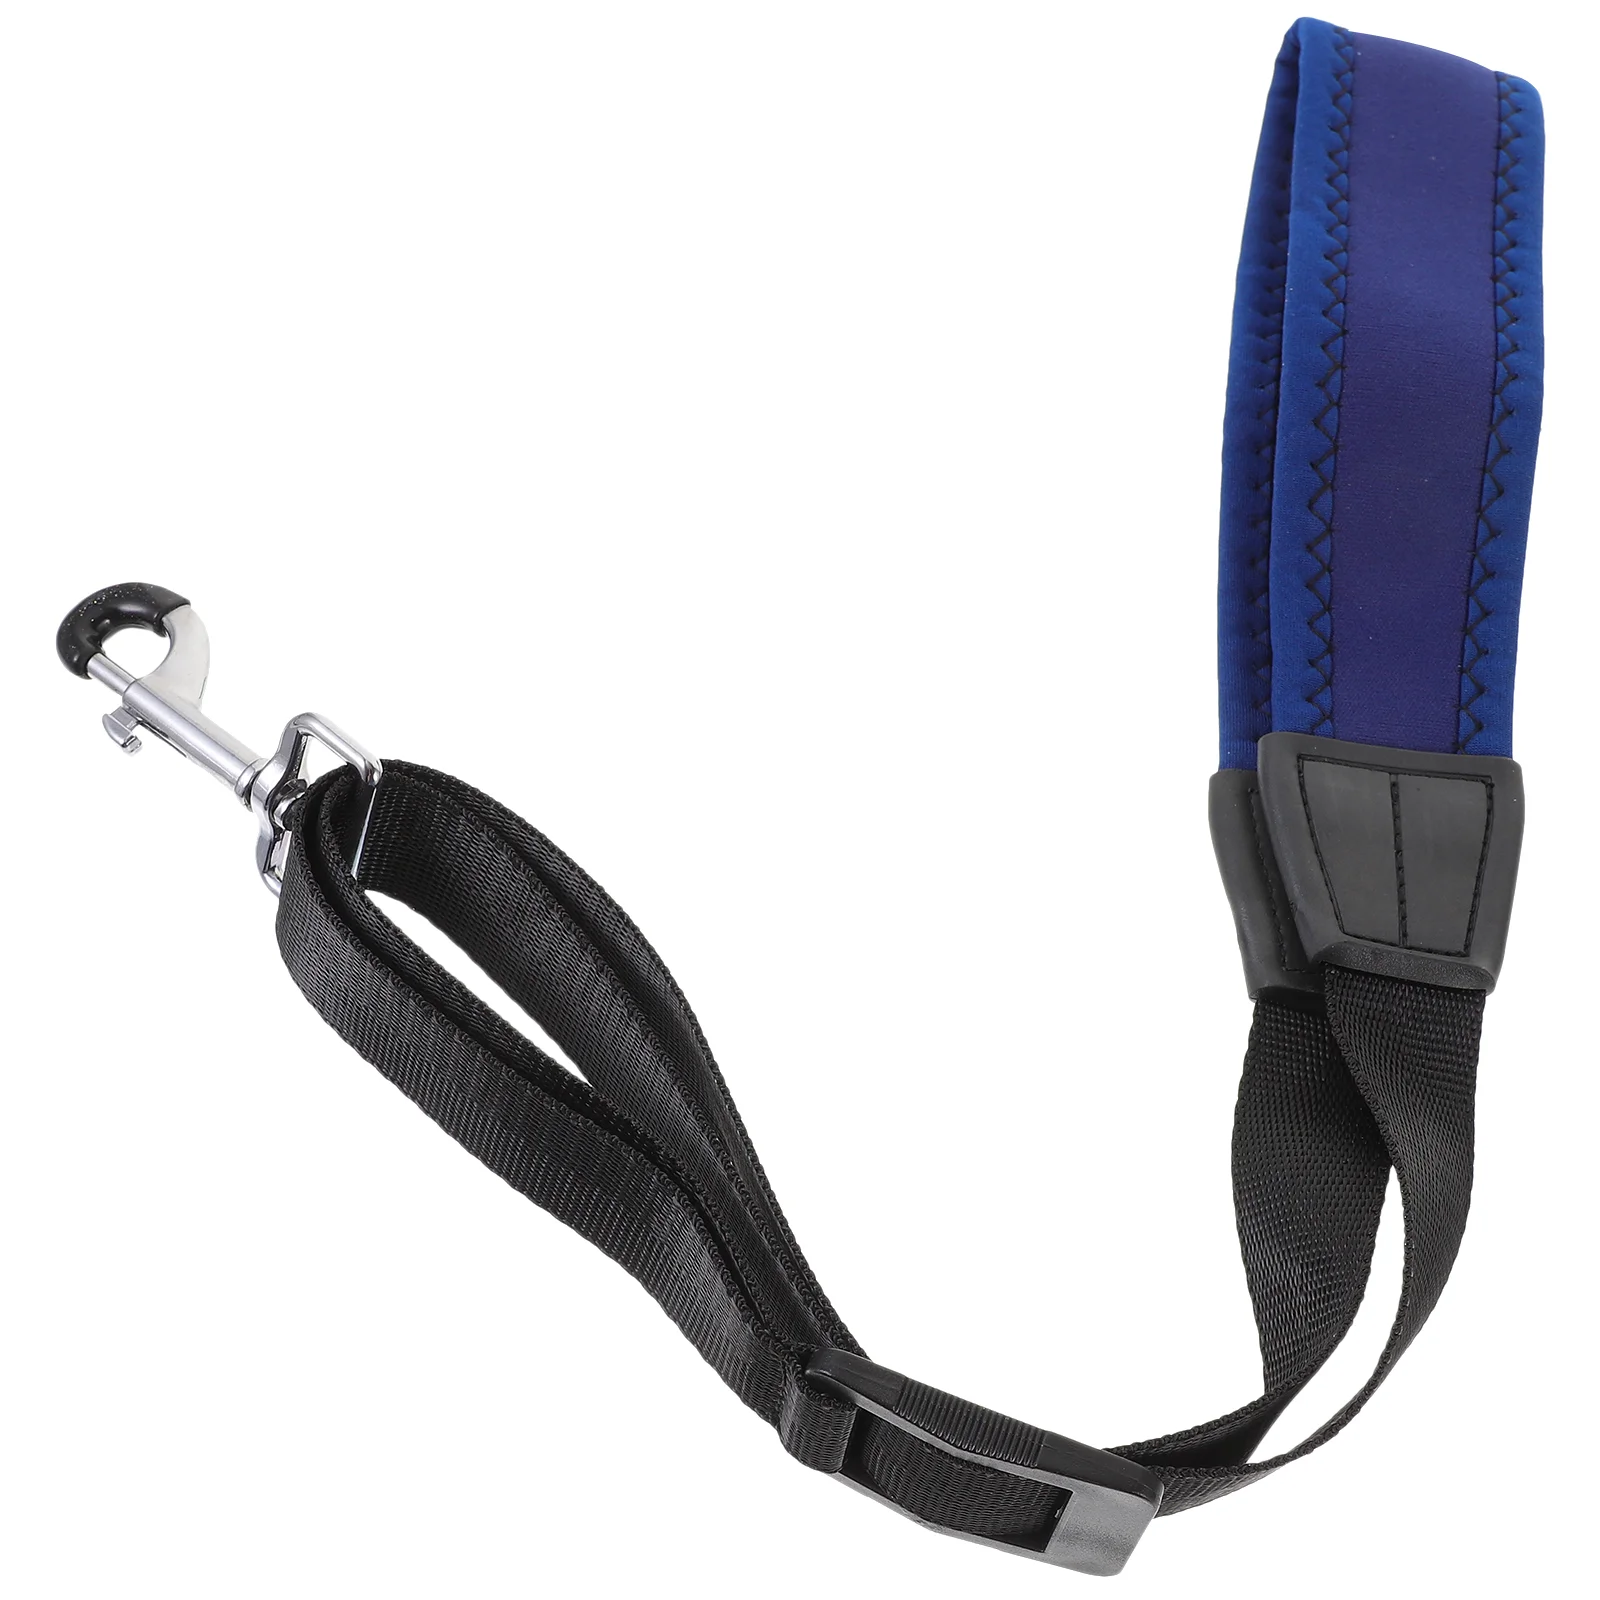 

Adjustable Sax Neck Belt Saxophone Strap Shoulder Harness Straps Lanyard Accessory